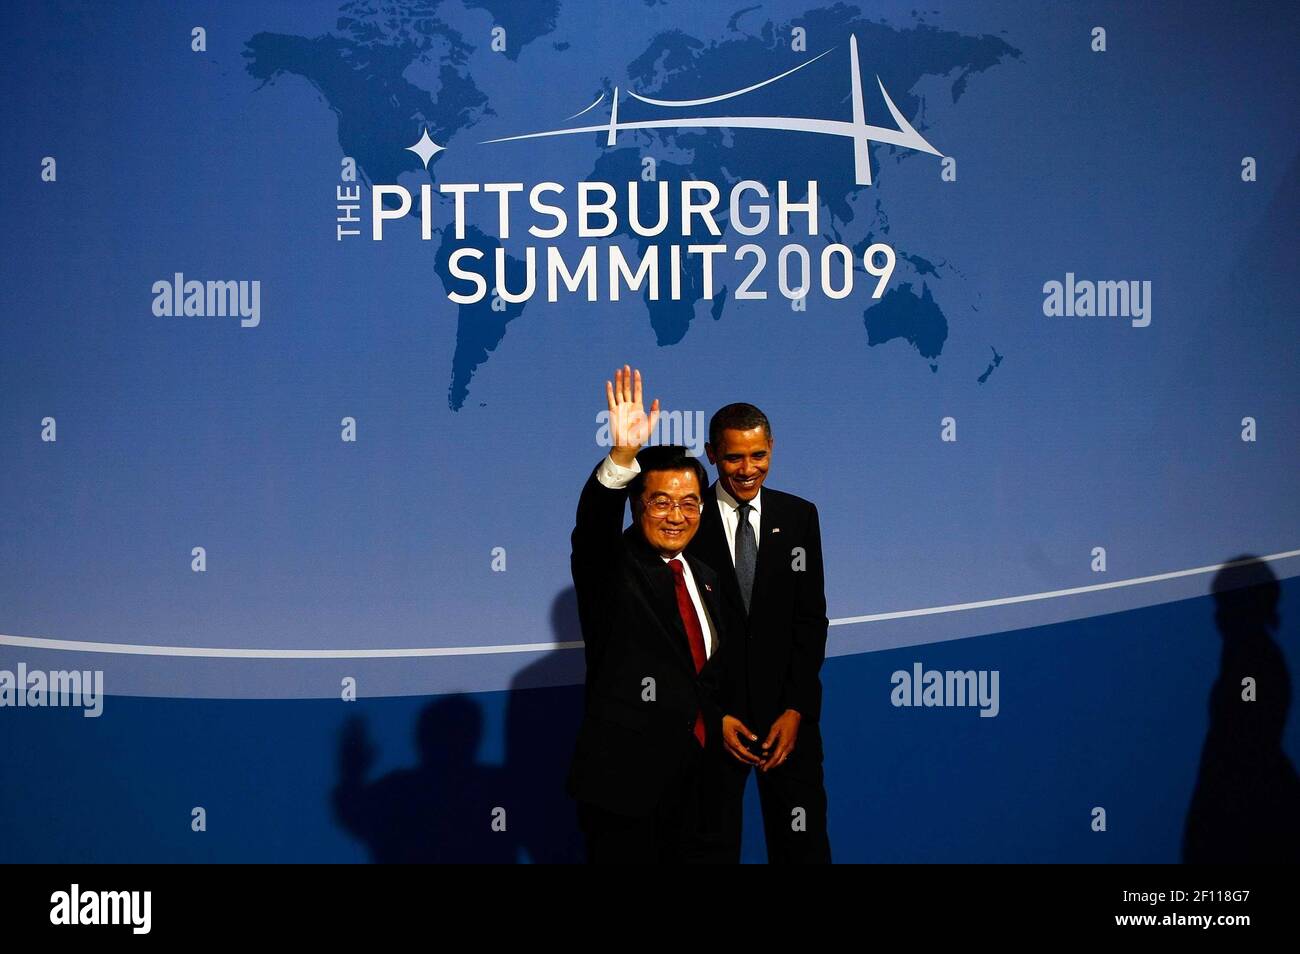 24 de septiembre de 2009 - Pittsburgh, Pensilvania - el presidente de los Estados Unidos, Barack Obama (R), da la bienvenida al presidente chino, Hu Jintao, a la cena de bienvenida para los líderes del G-20 en el Conservatorio Phipps el 24 de septiembre de 2009 en Pittsburgh, Pensilvania. Los jefes de estado de las principales potencias económicas del mundo llegaron hoy para la cumbre de dos días del G-20 celebrada en el Centro de Convenciones David L. Lawrence con el objetivo de promover el crecimiento económico. Crédito de la foto: Win McNamee/Pool/Sipa Press/0909251418 Foto de stock